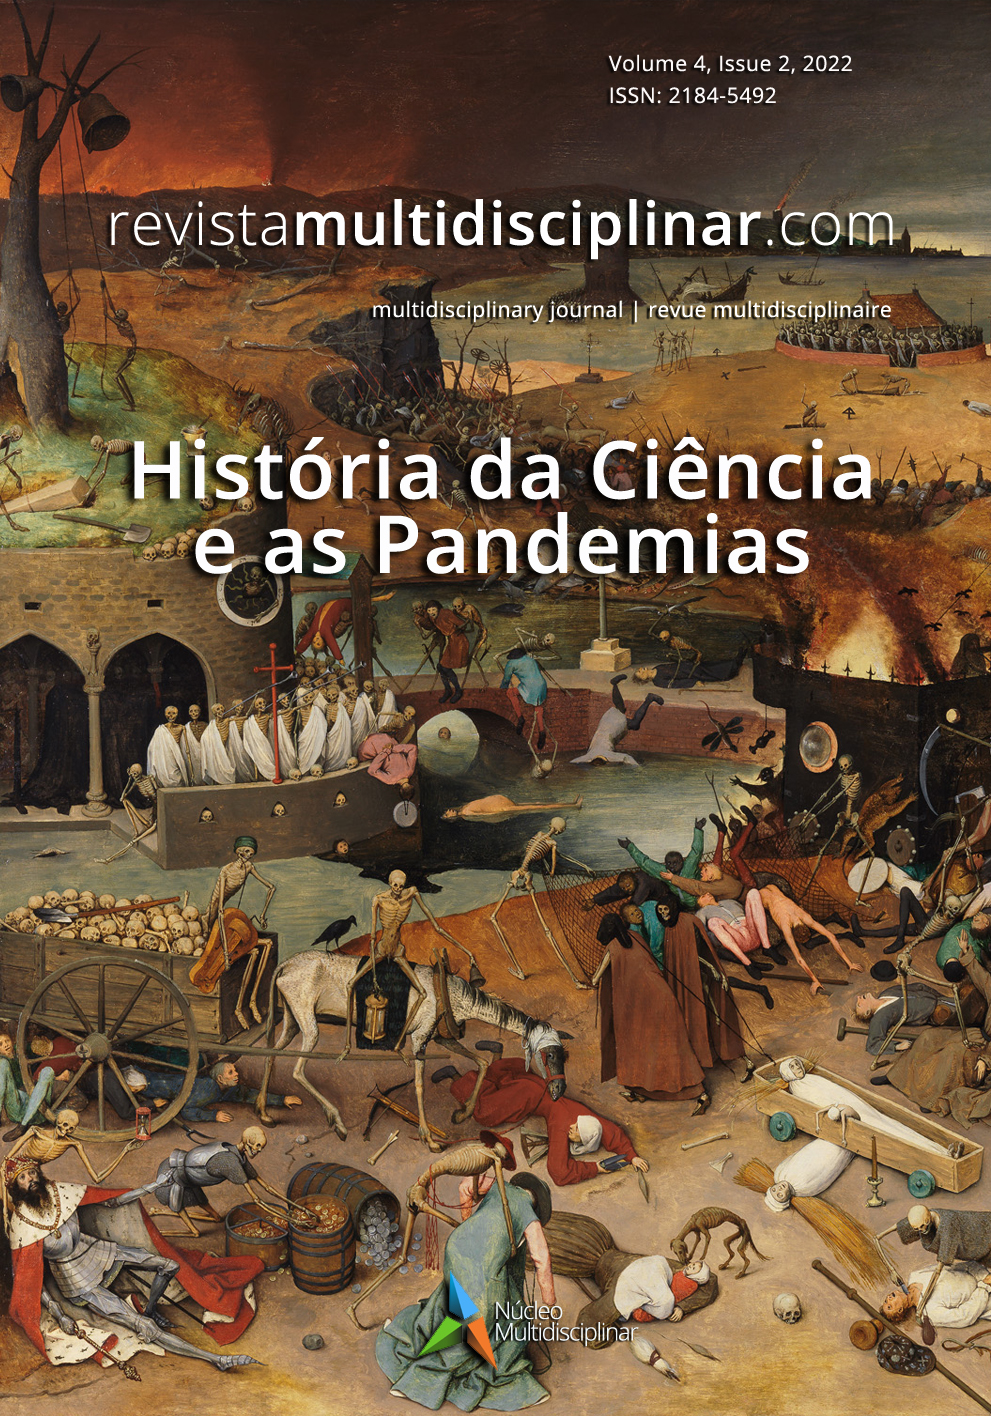 					Ver Vol. 4 N.º 2 (2022): História da Ciência e as Pandemias
				